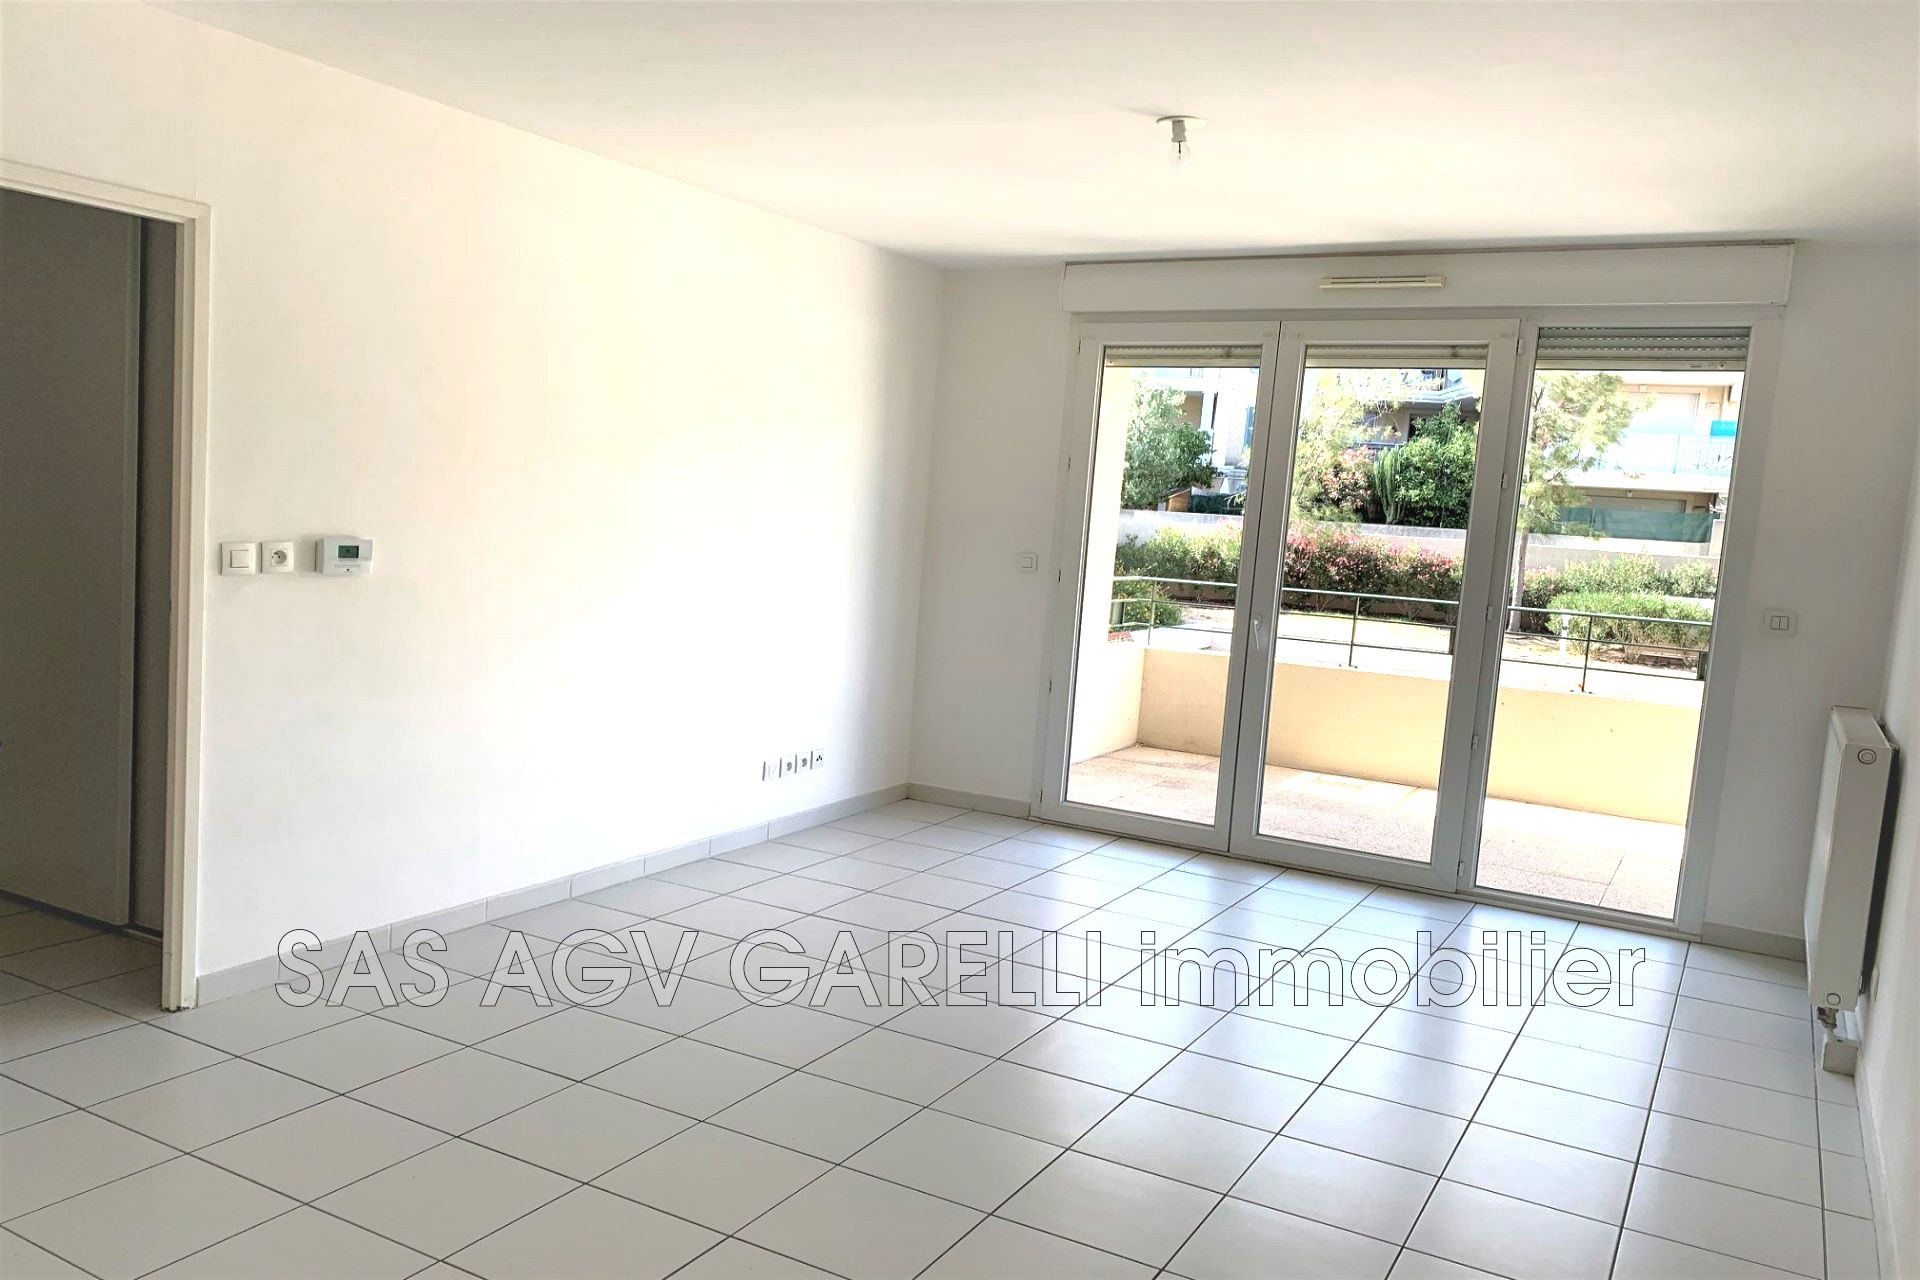 Vente Appartement 56m² 3 Pièces à Toulon (83200) - Agv Garelli Immobilier